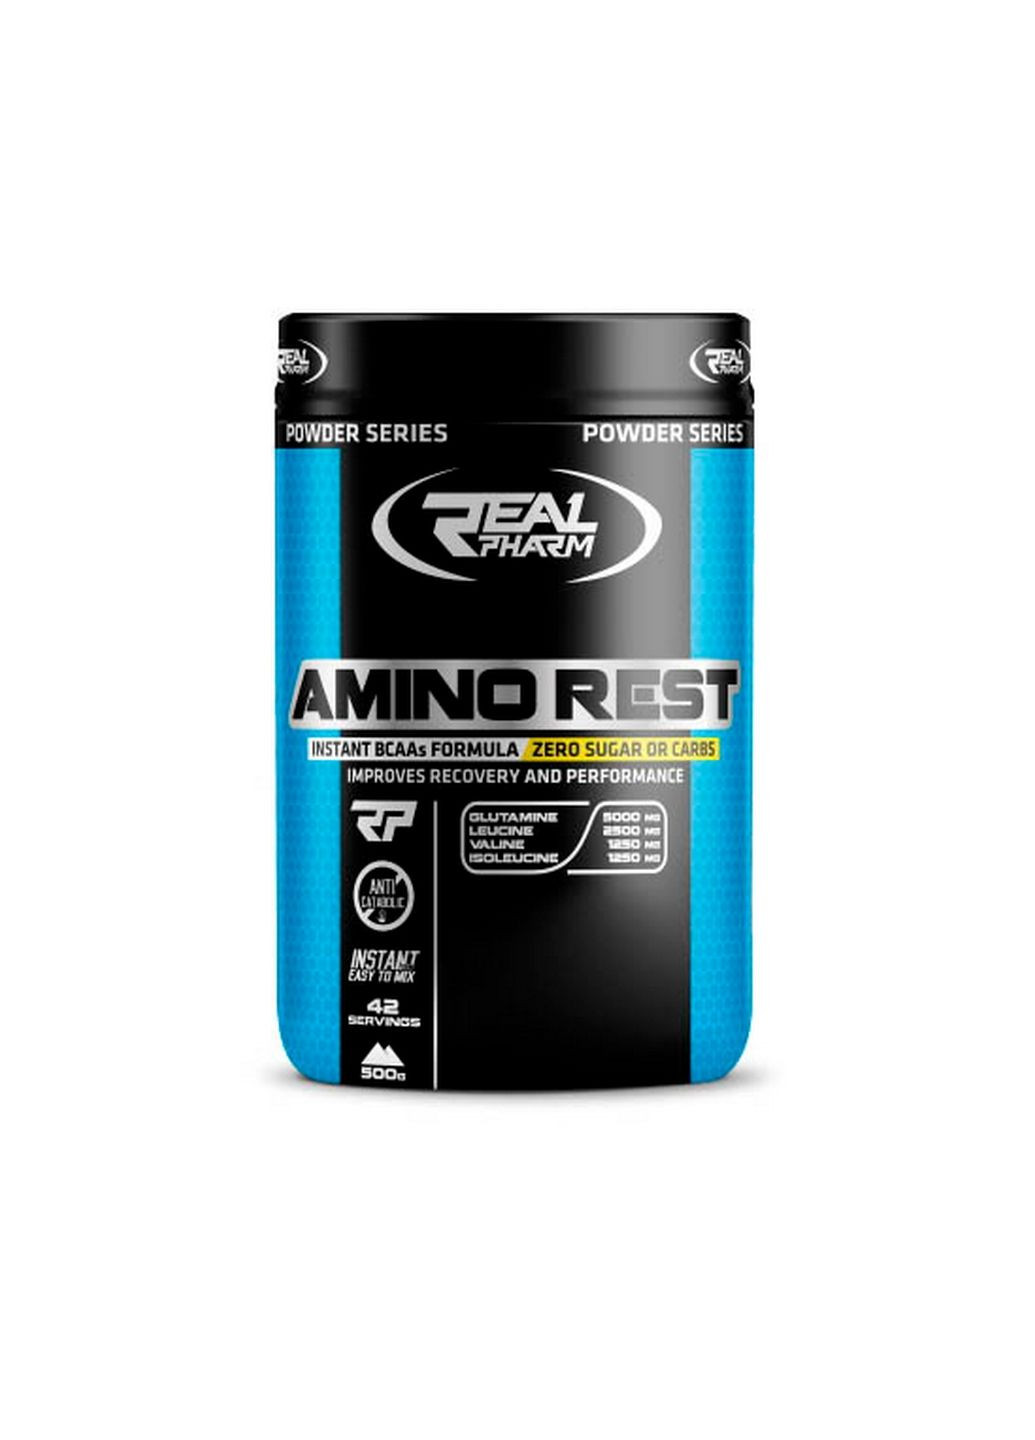 Аминокислота Amino Rest, 500 грамм Клубника-арбуз Real Pharm (293420195)